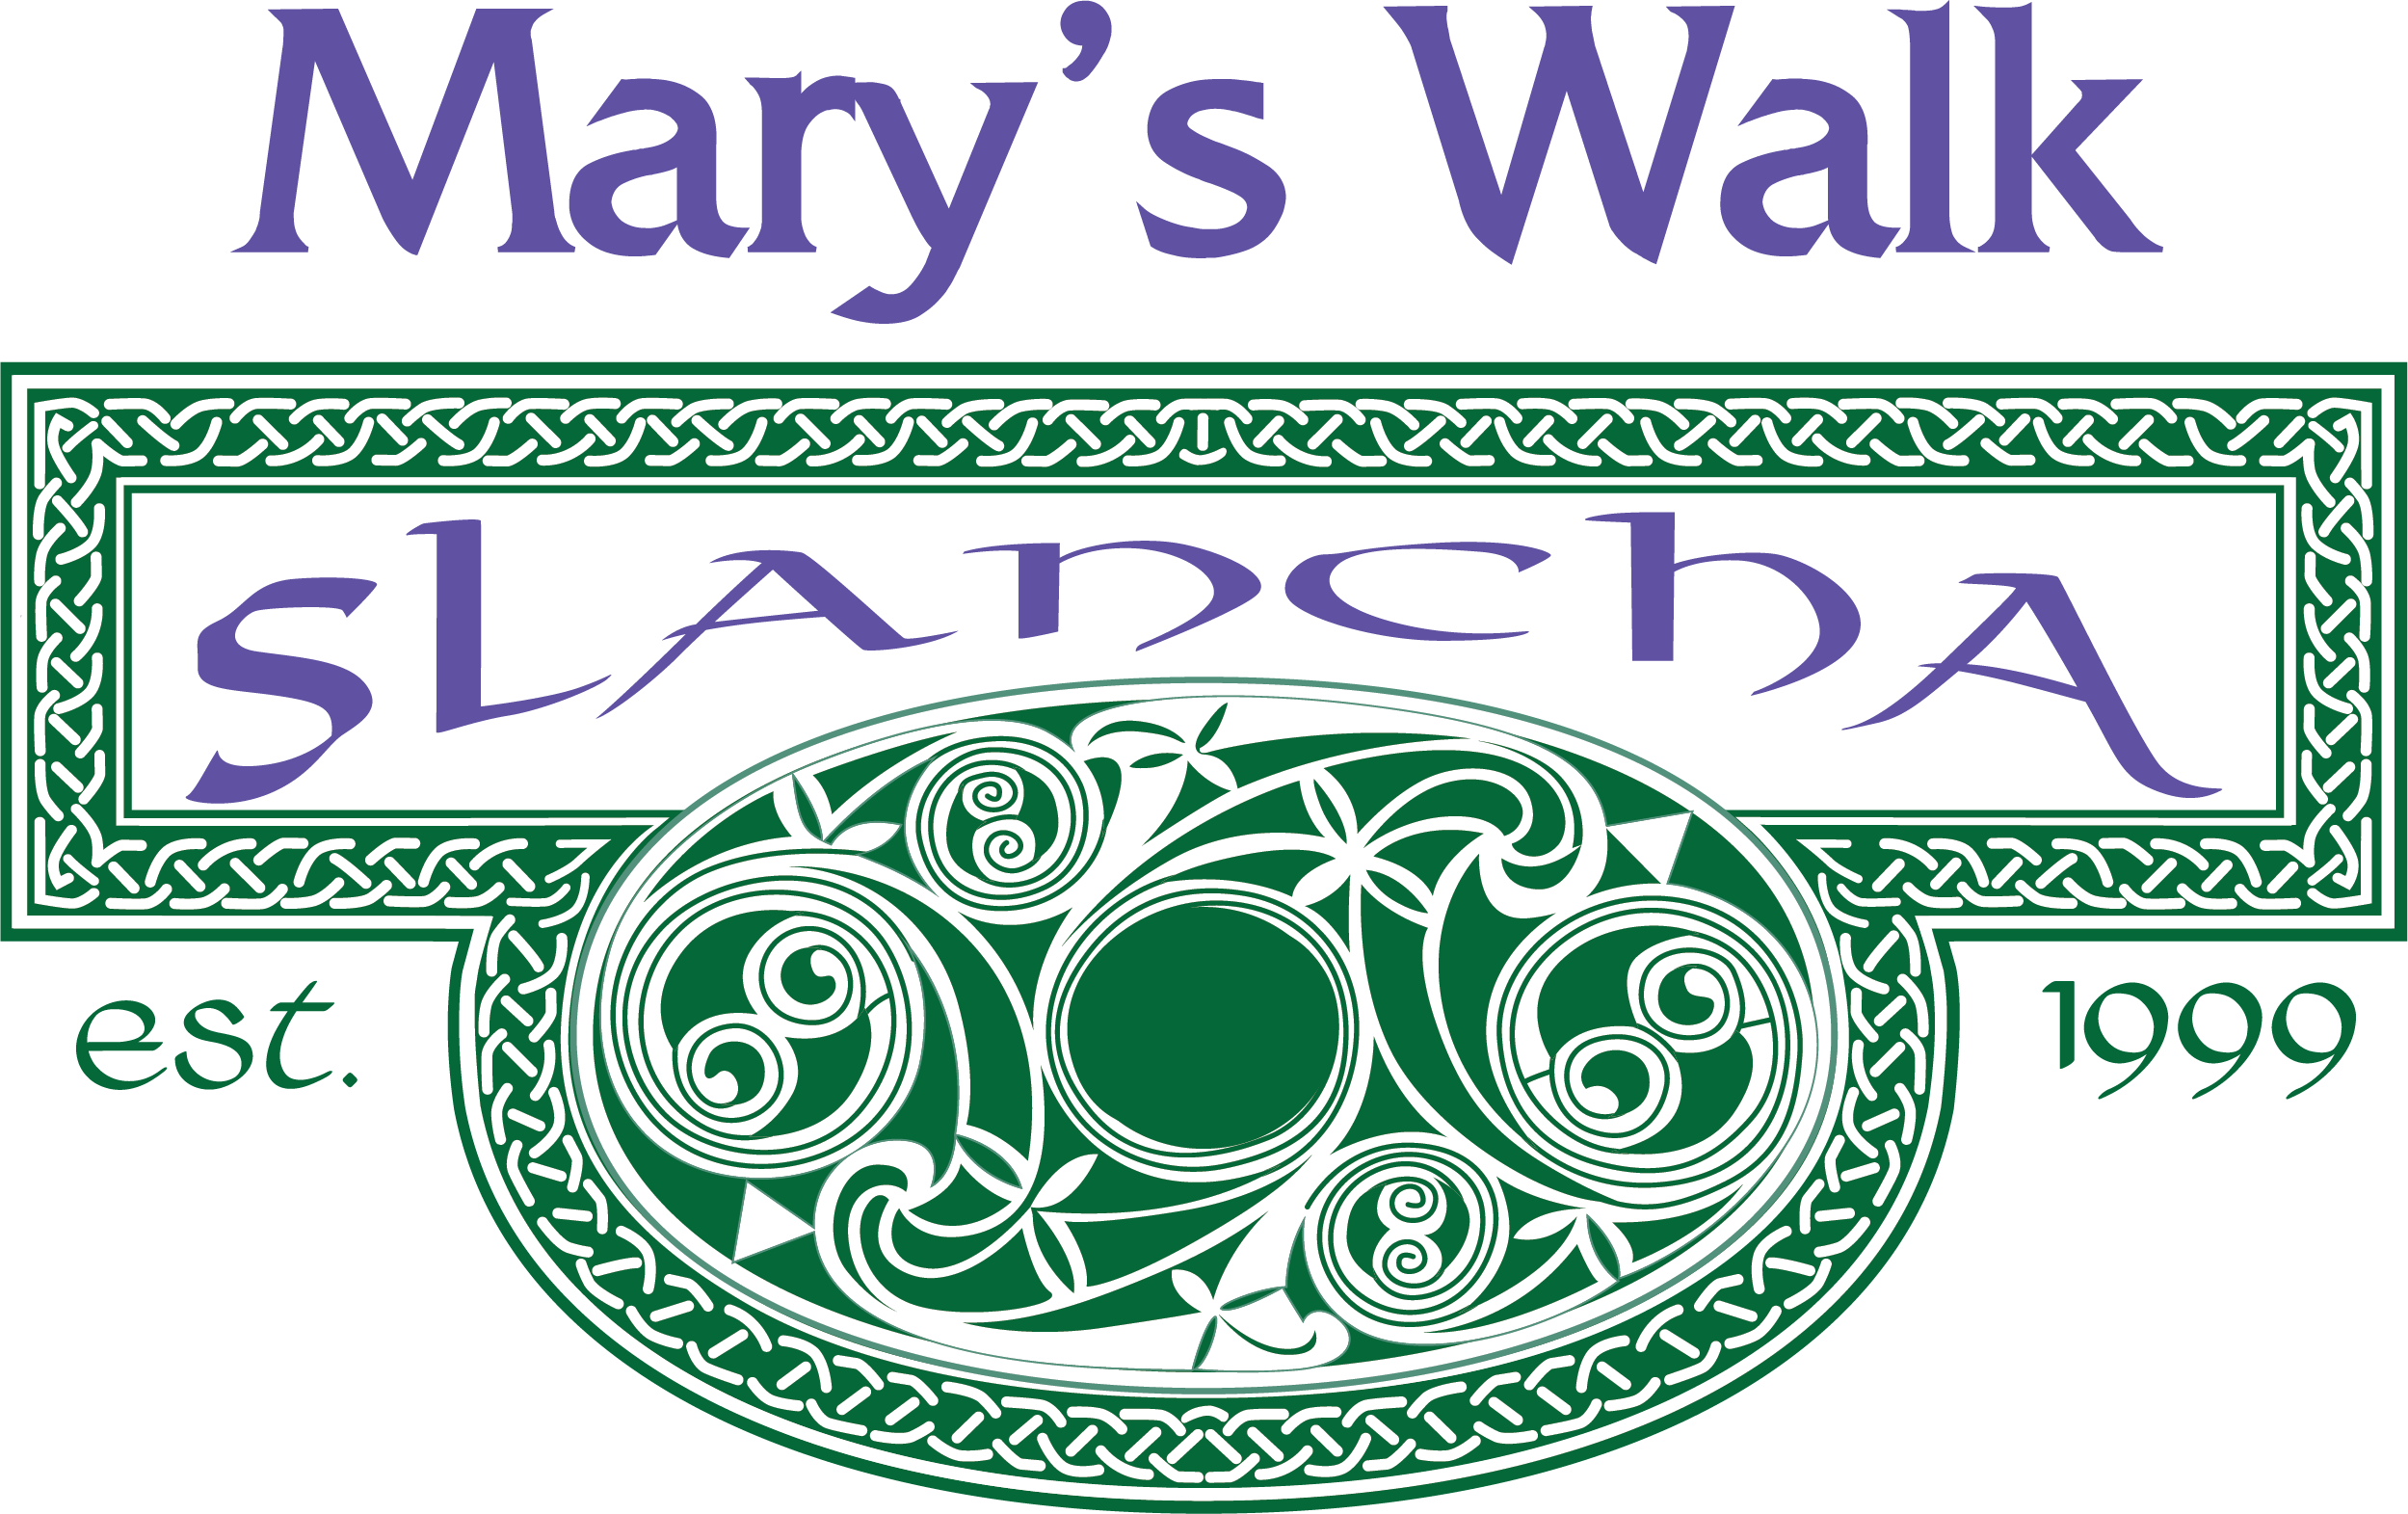 Mary's Walk